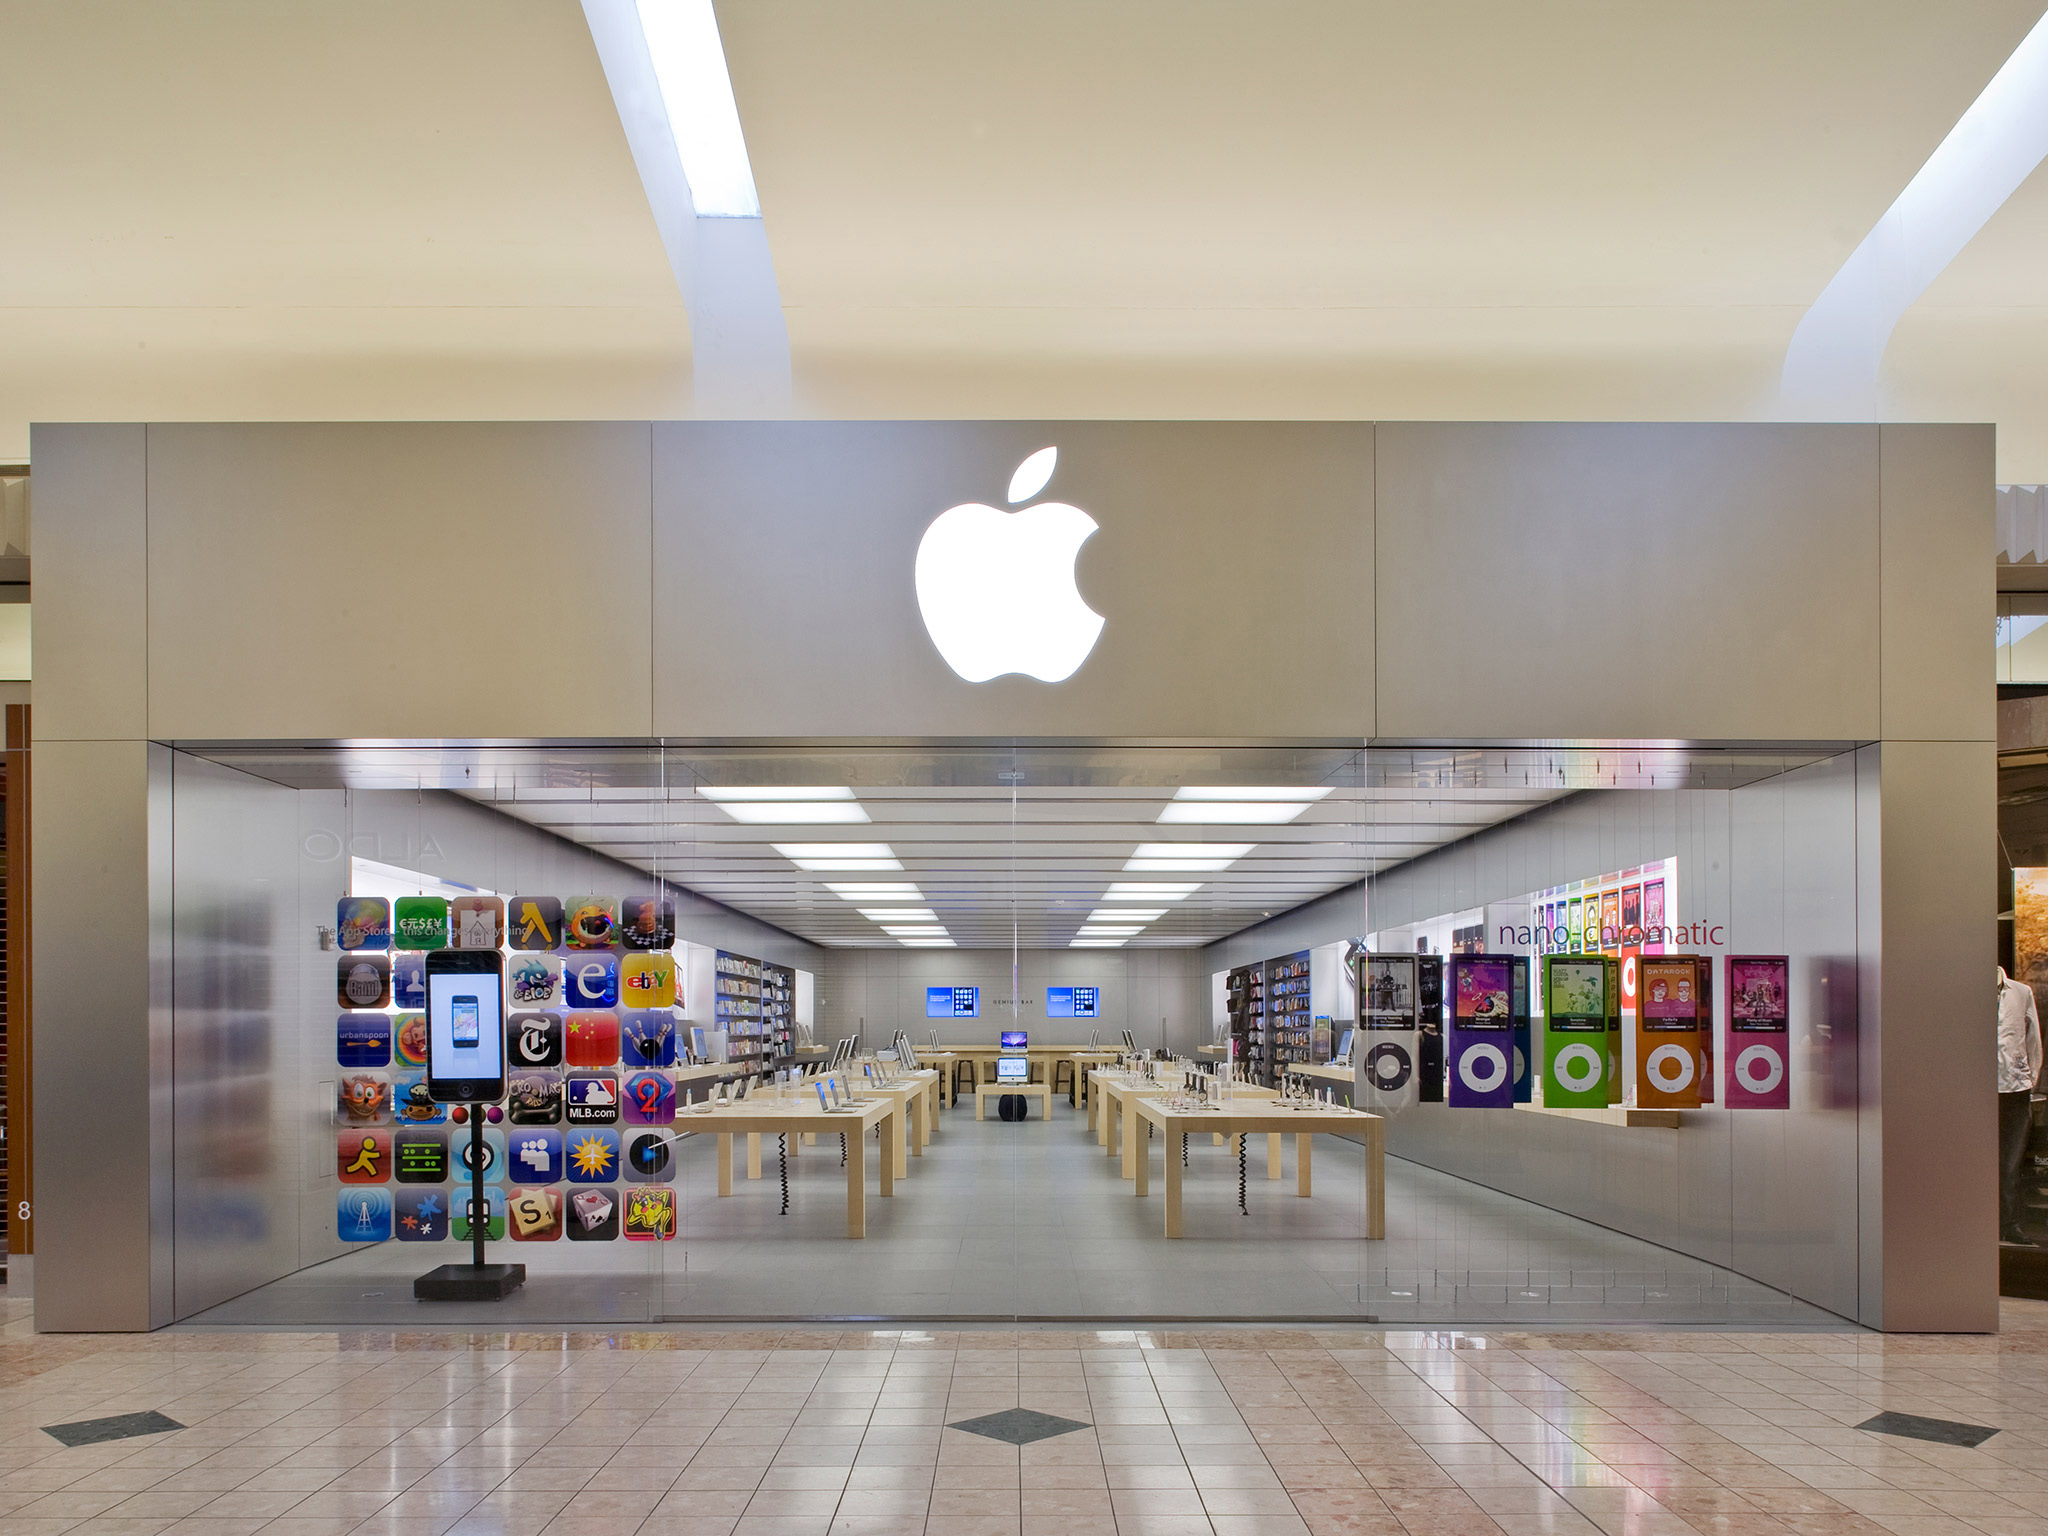 Iphone store us apple airplay mirroring macbook